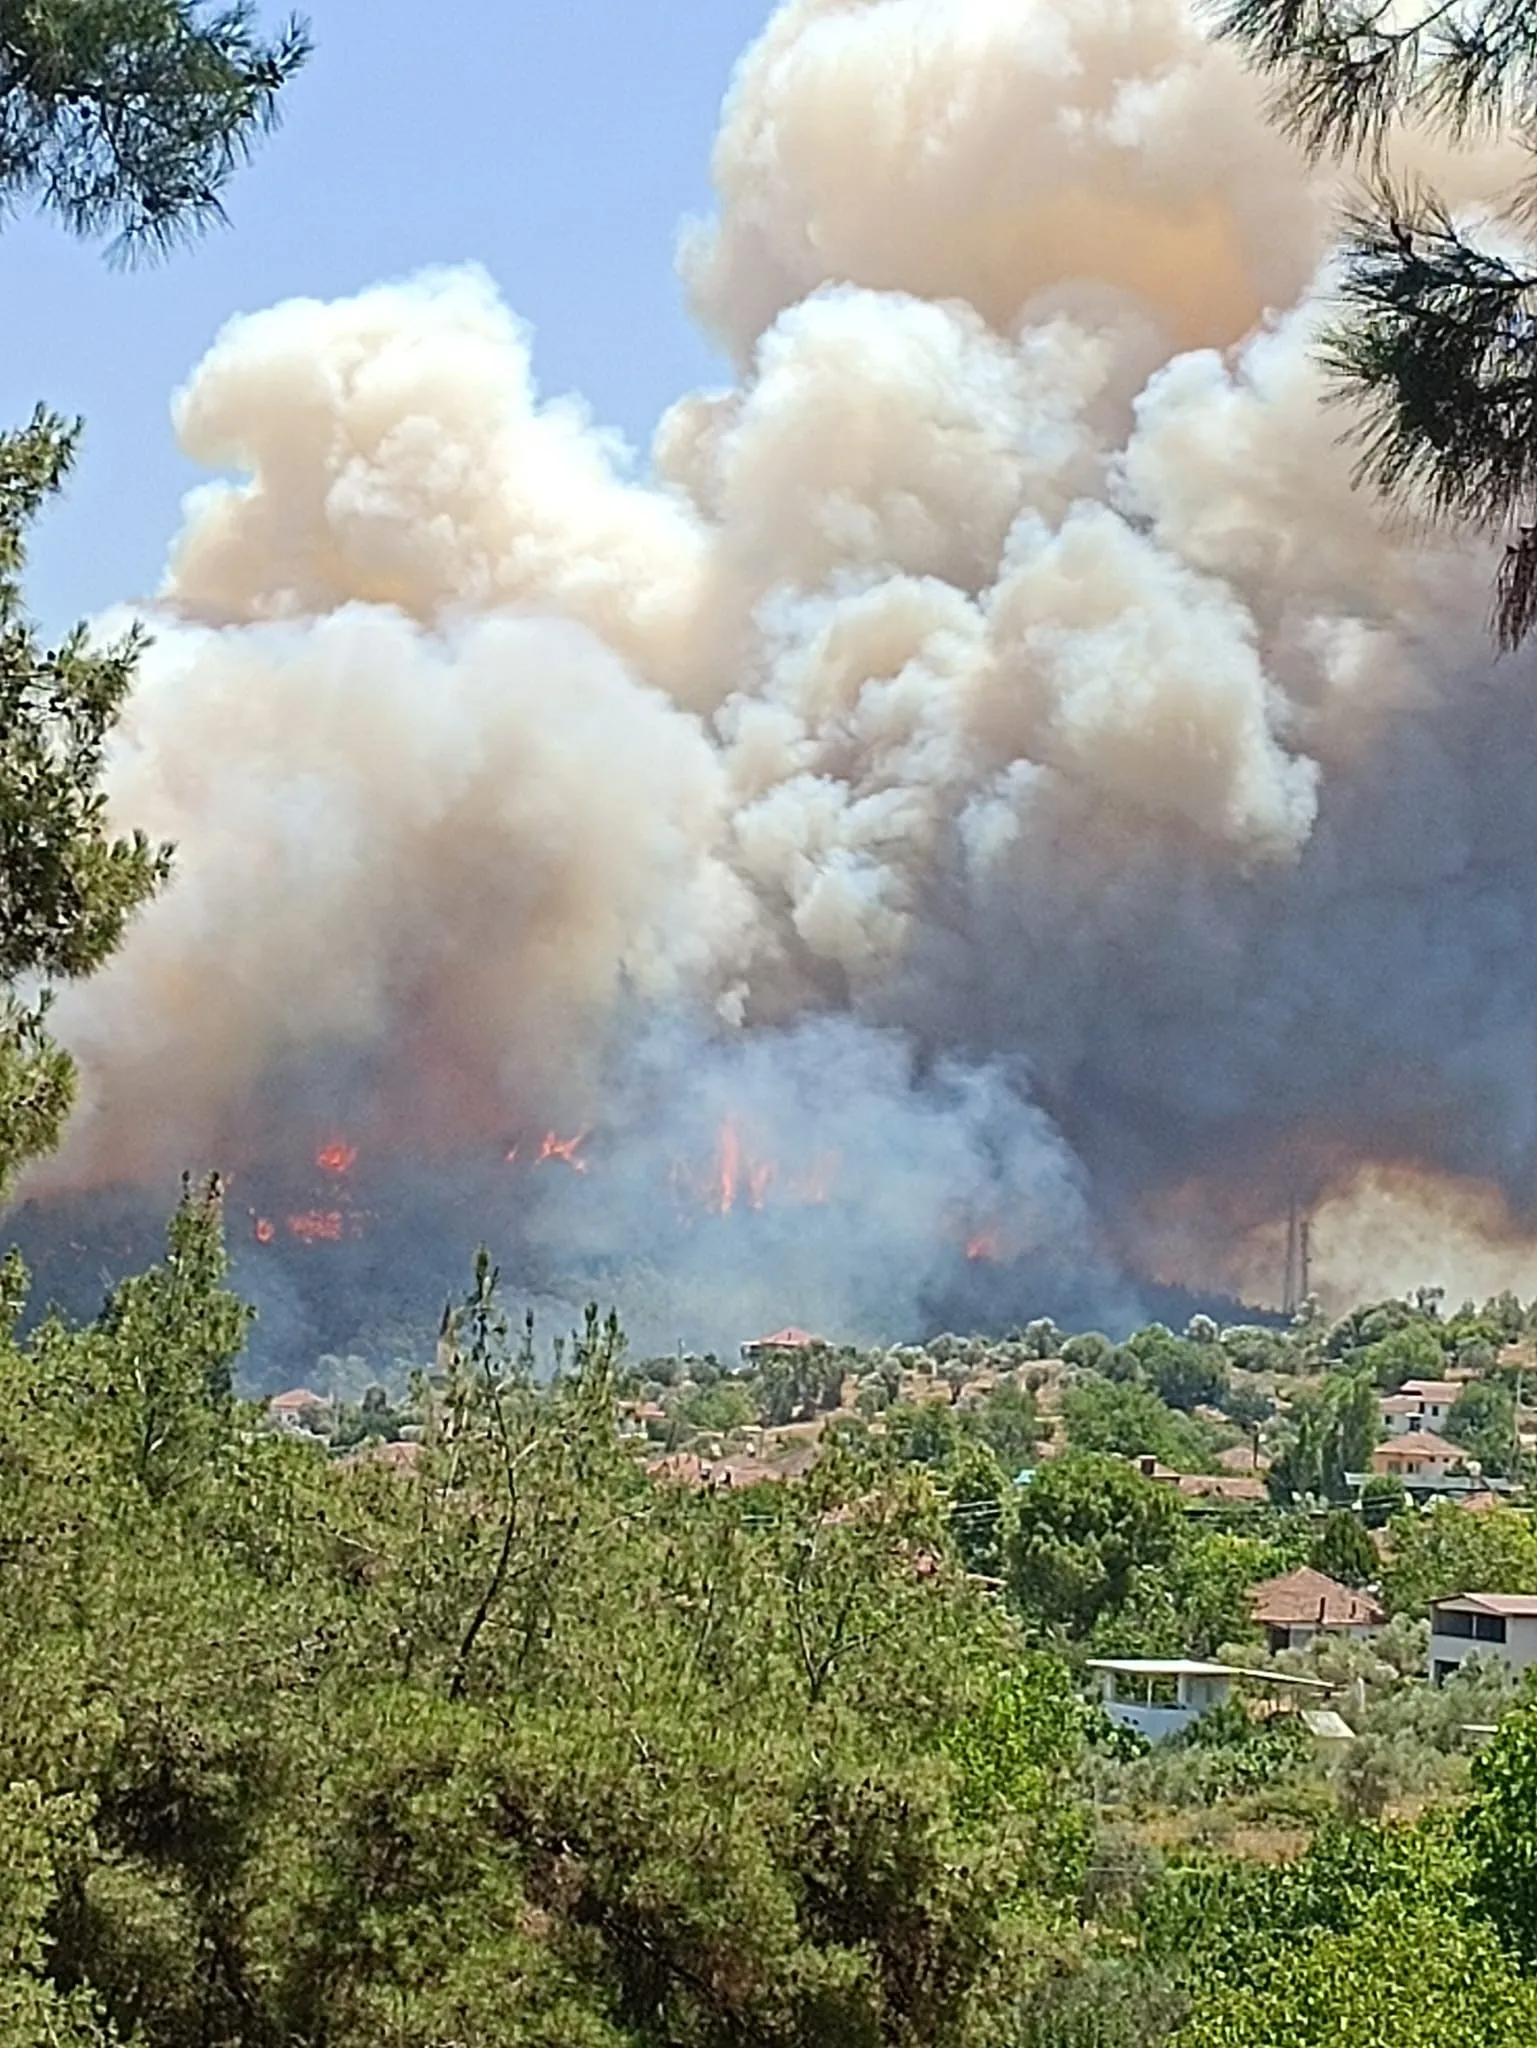 İzmir'in Menderes, Çeşme ve Selçuk ilçelerinde çıkan orman yangınlarına havadan ve karadan müdahale ediliyor. Yangınlar nedeniyle bazı bölgelerde tahliyeler oldu ve yollar trafiğe kapatıldı